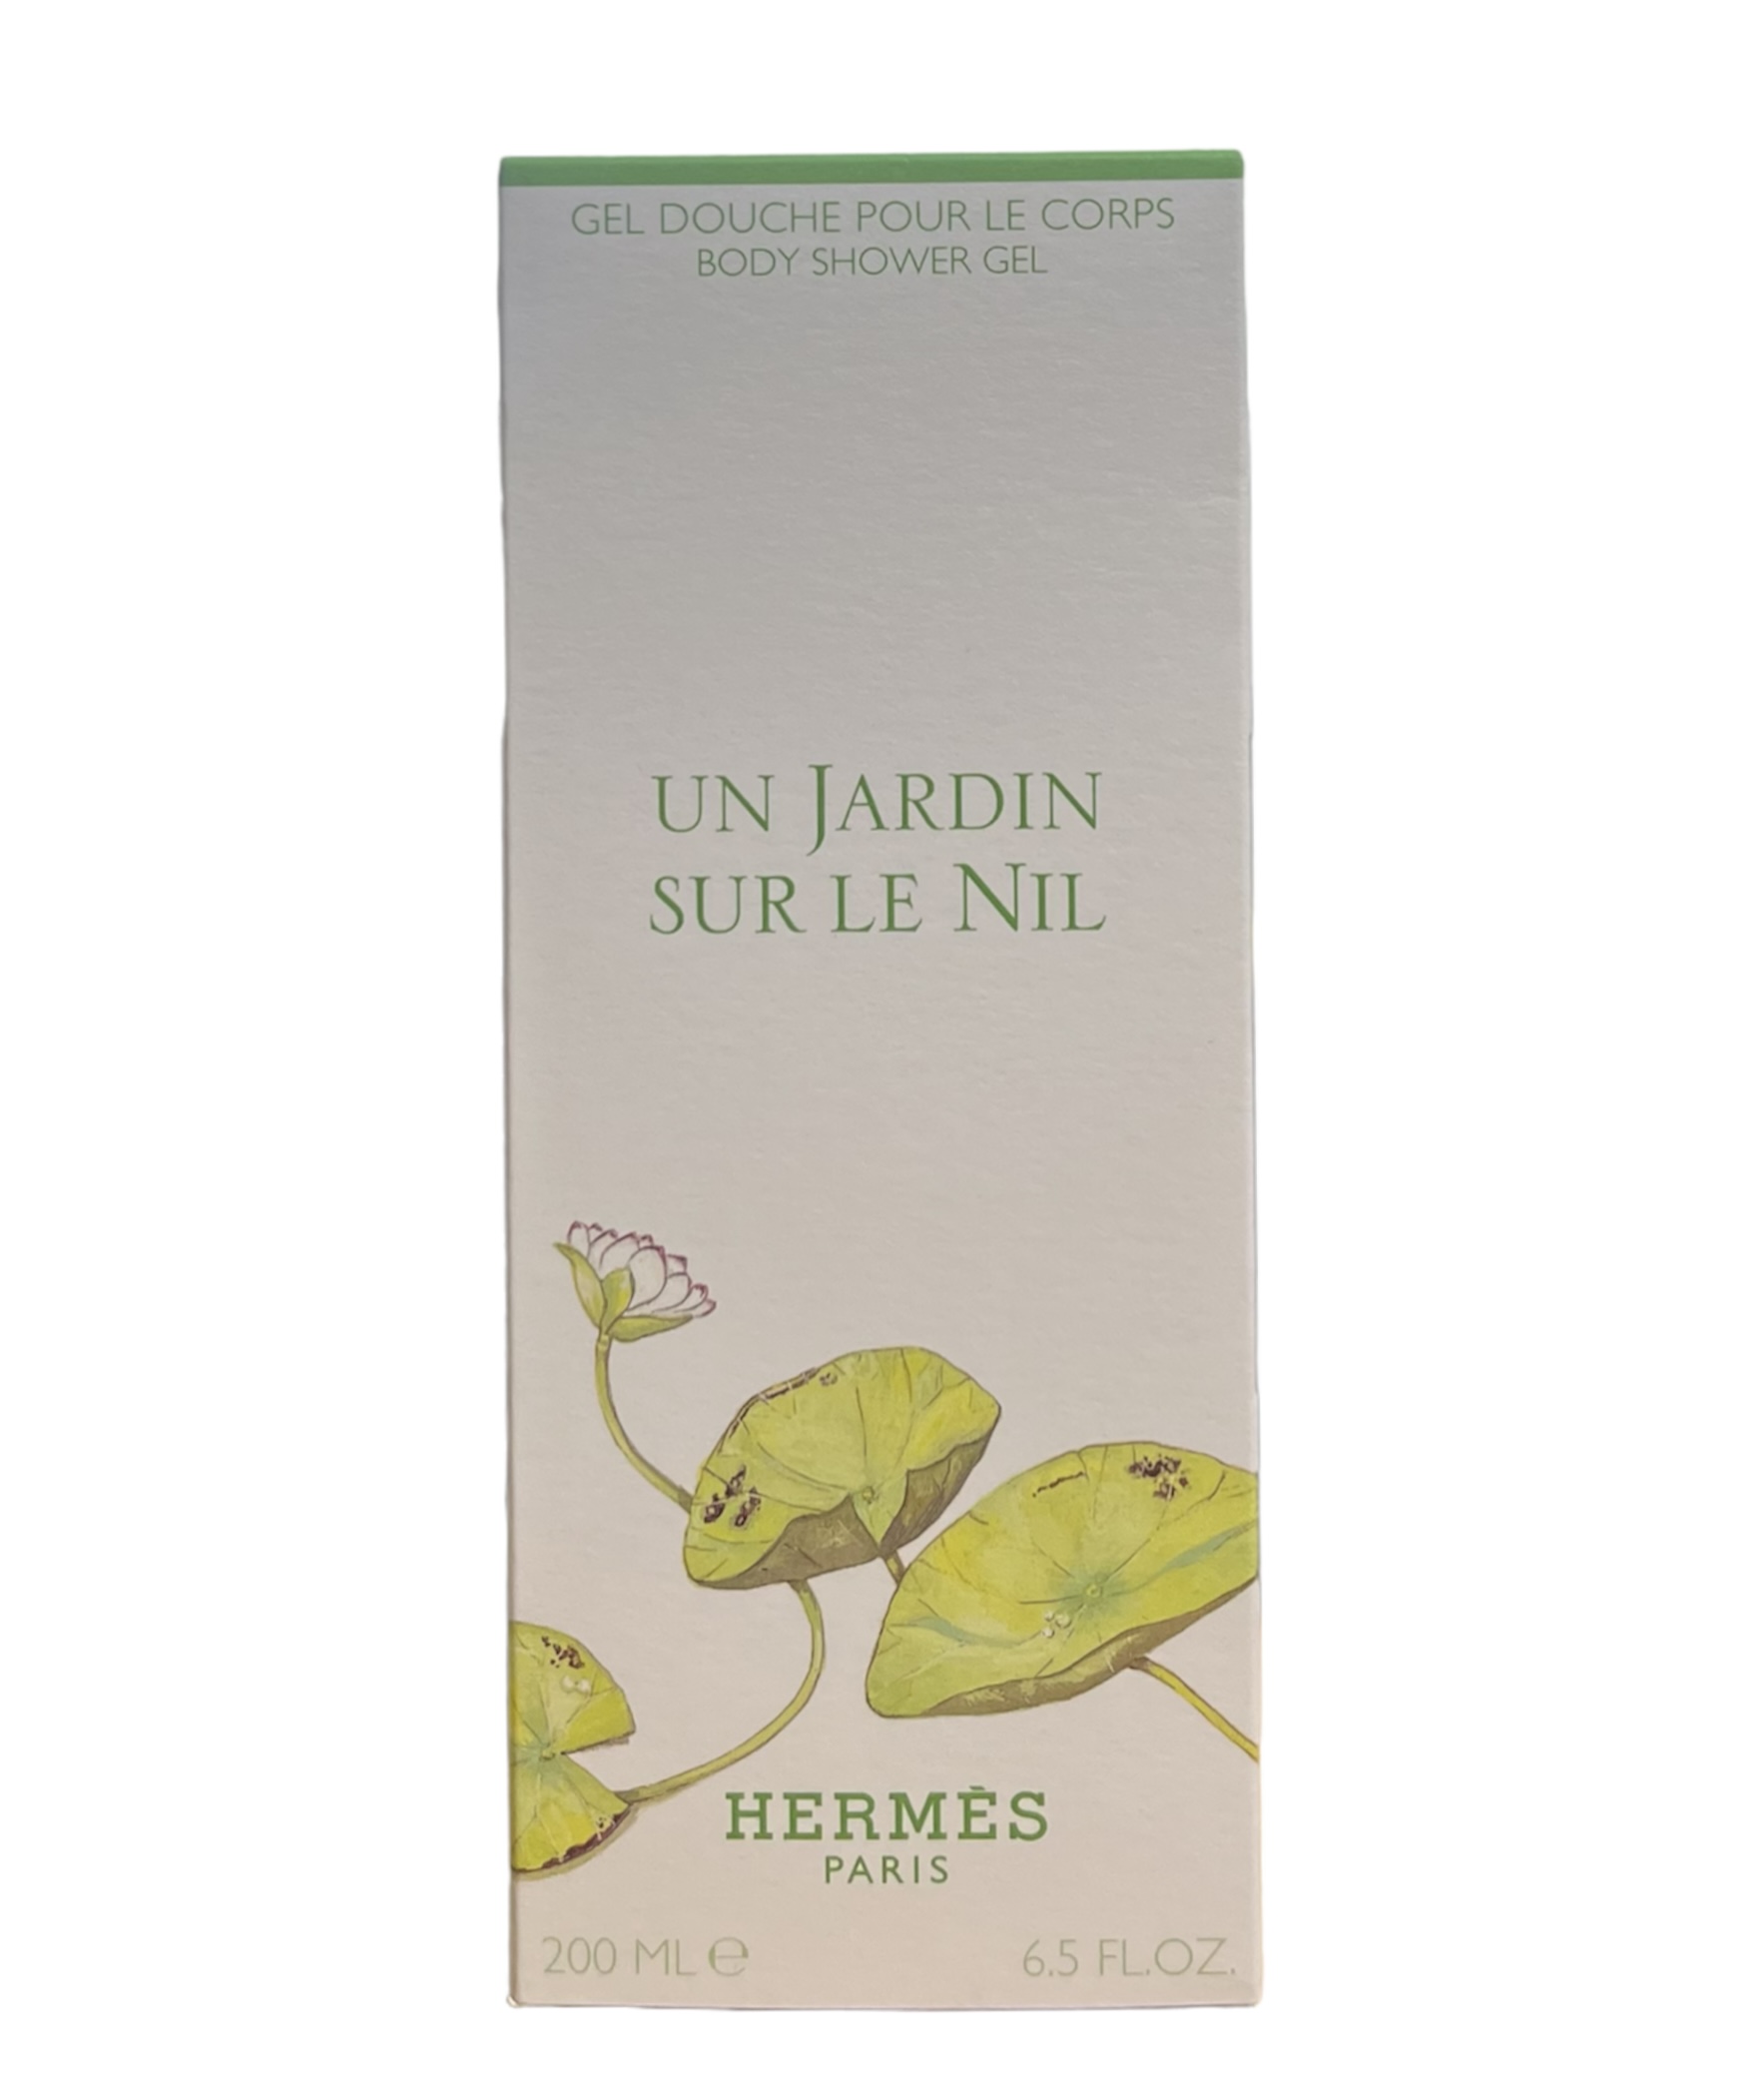 Hermes - Un Jardin sur le Nil / Gel douche pour le Corps 200ml